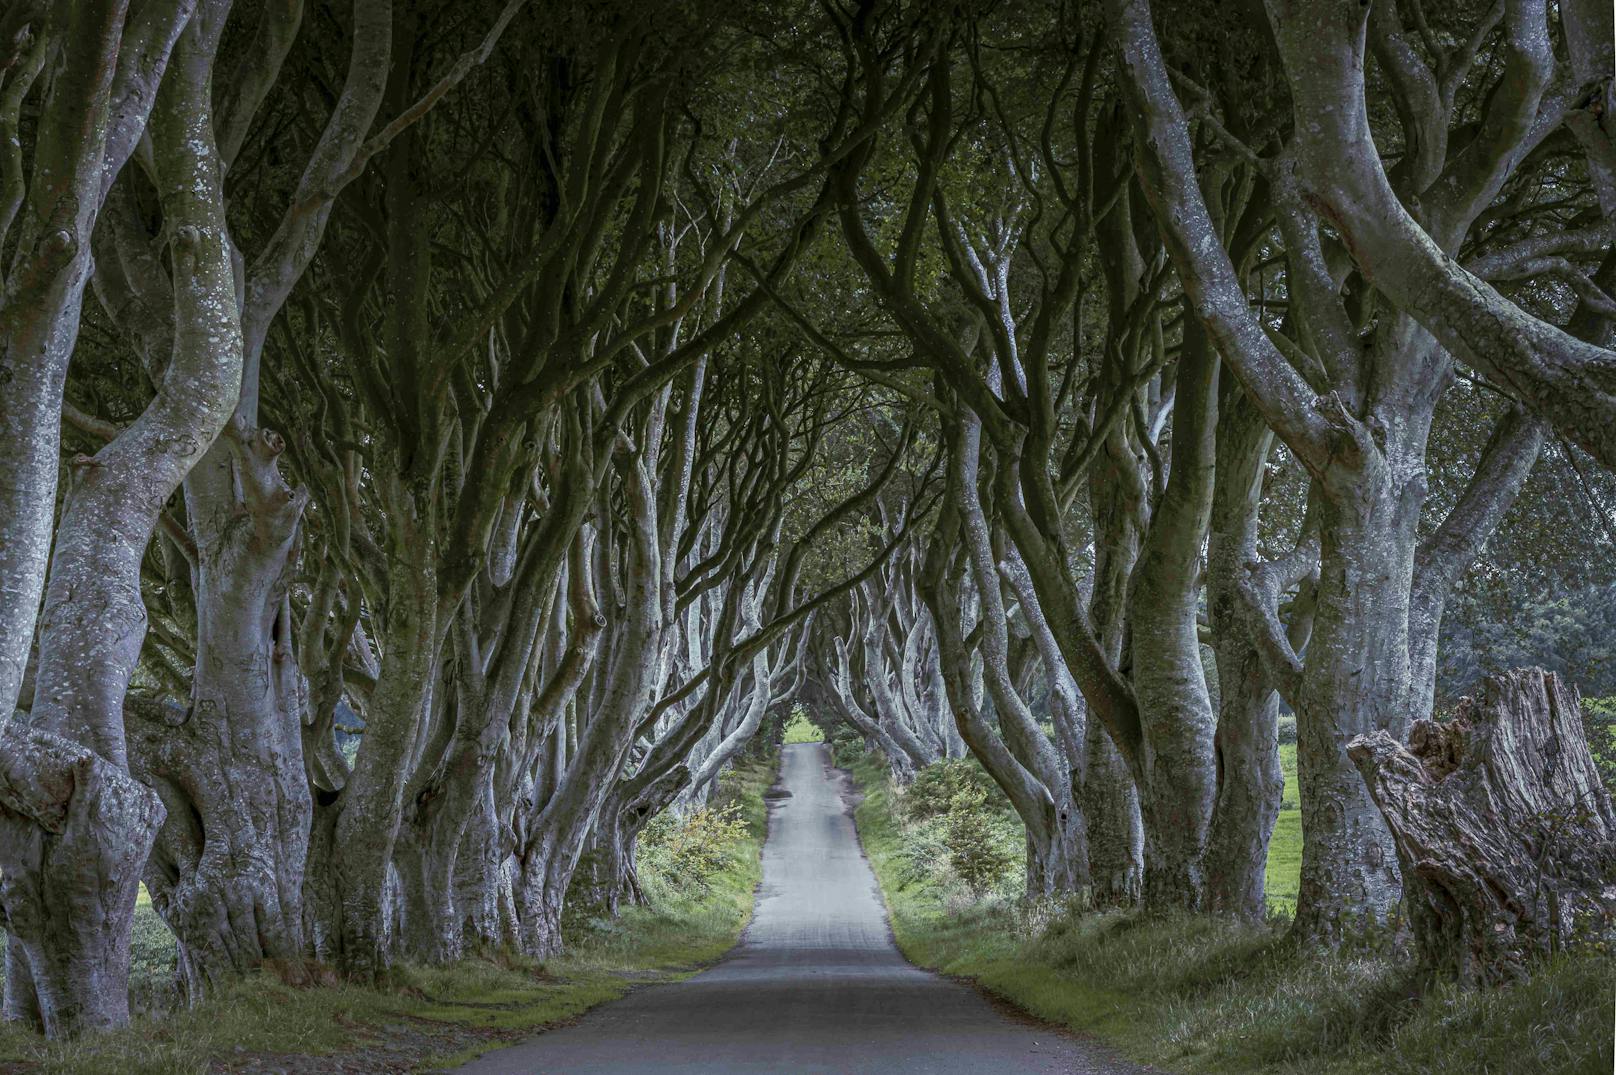 An der Bregagh Road in Ballymoney, Nordirland, stehen über 200 Jahre alte Buchen Spalier. Die imposante Straße mit dem Spitznamen "Dark Hedges" ist vor allem Fans der HBO-Serie "Game of Thrones" ein Begriff.